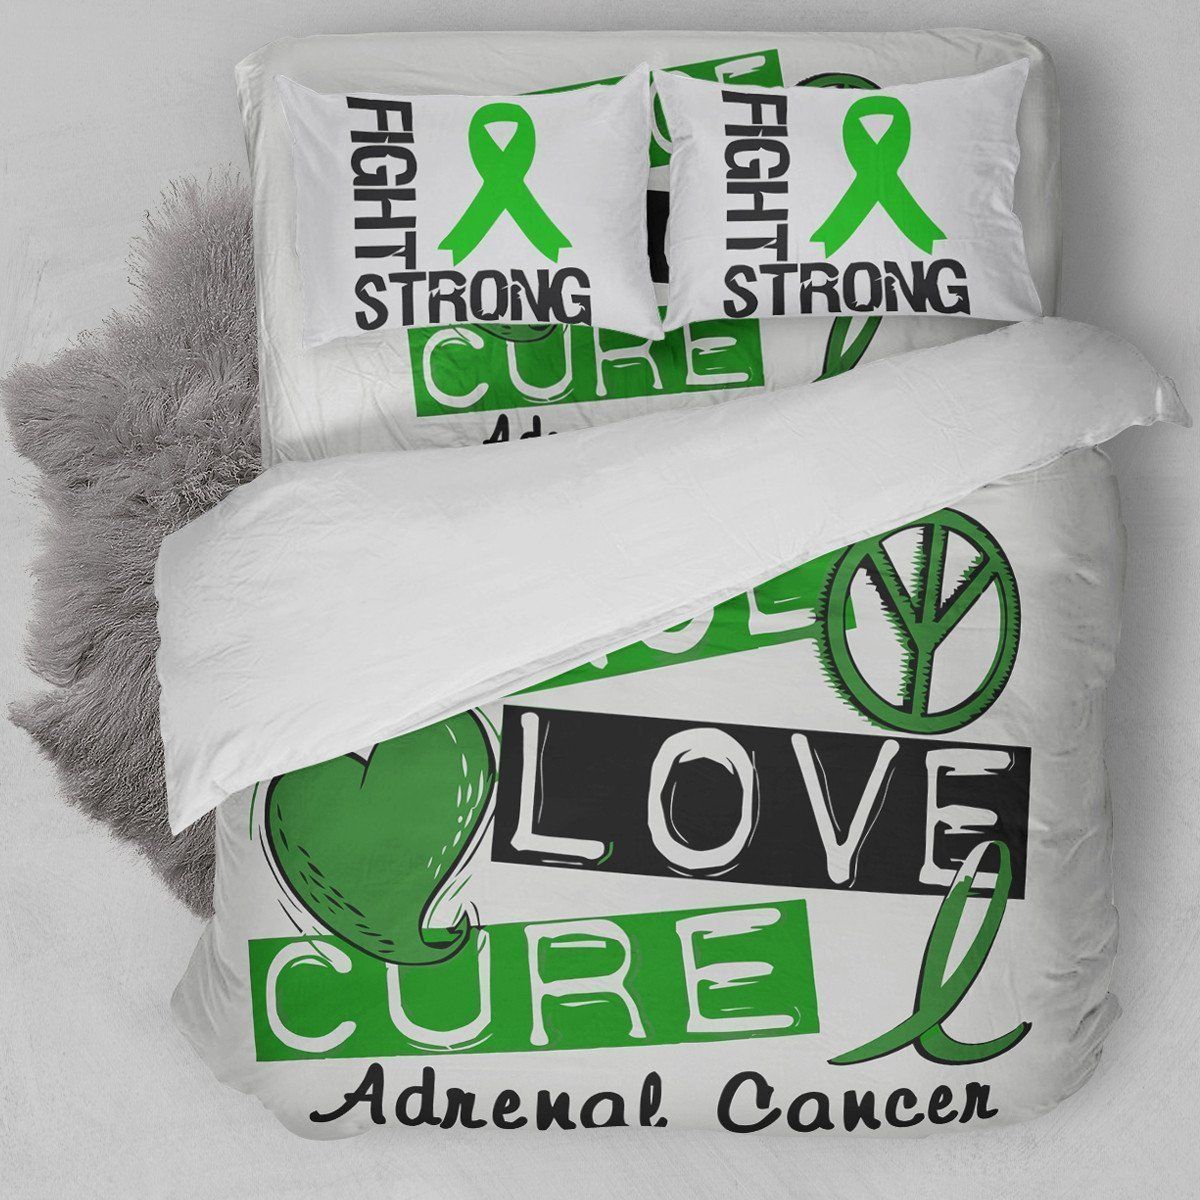 Adrenal Cancer Fighting Bedding Set